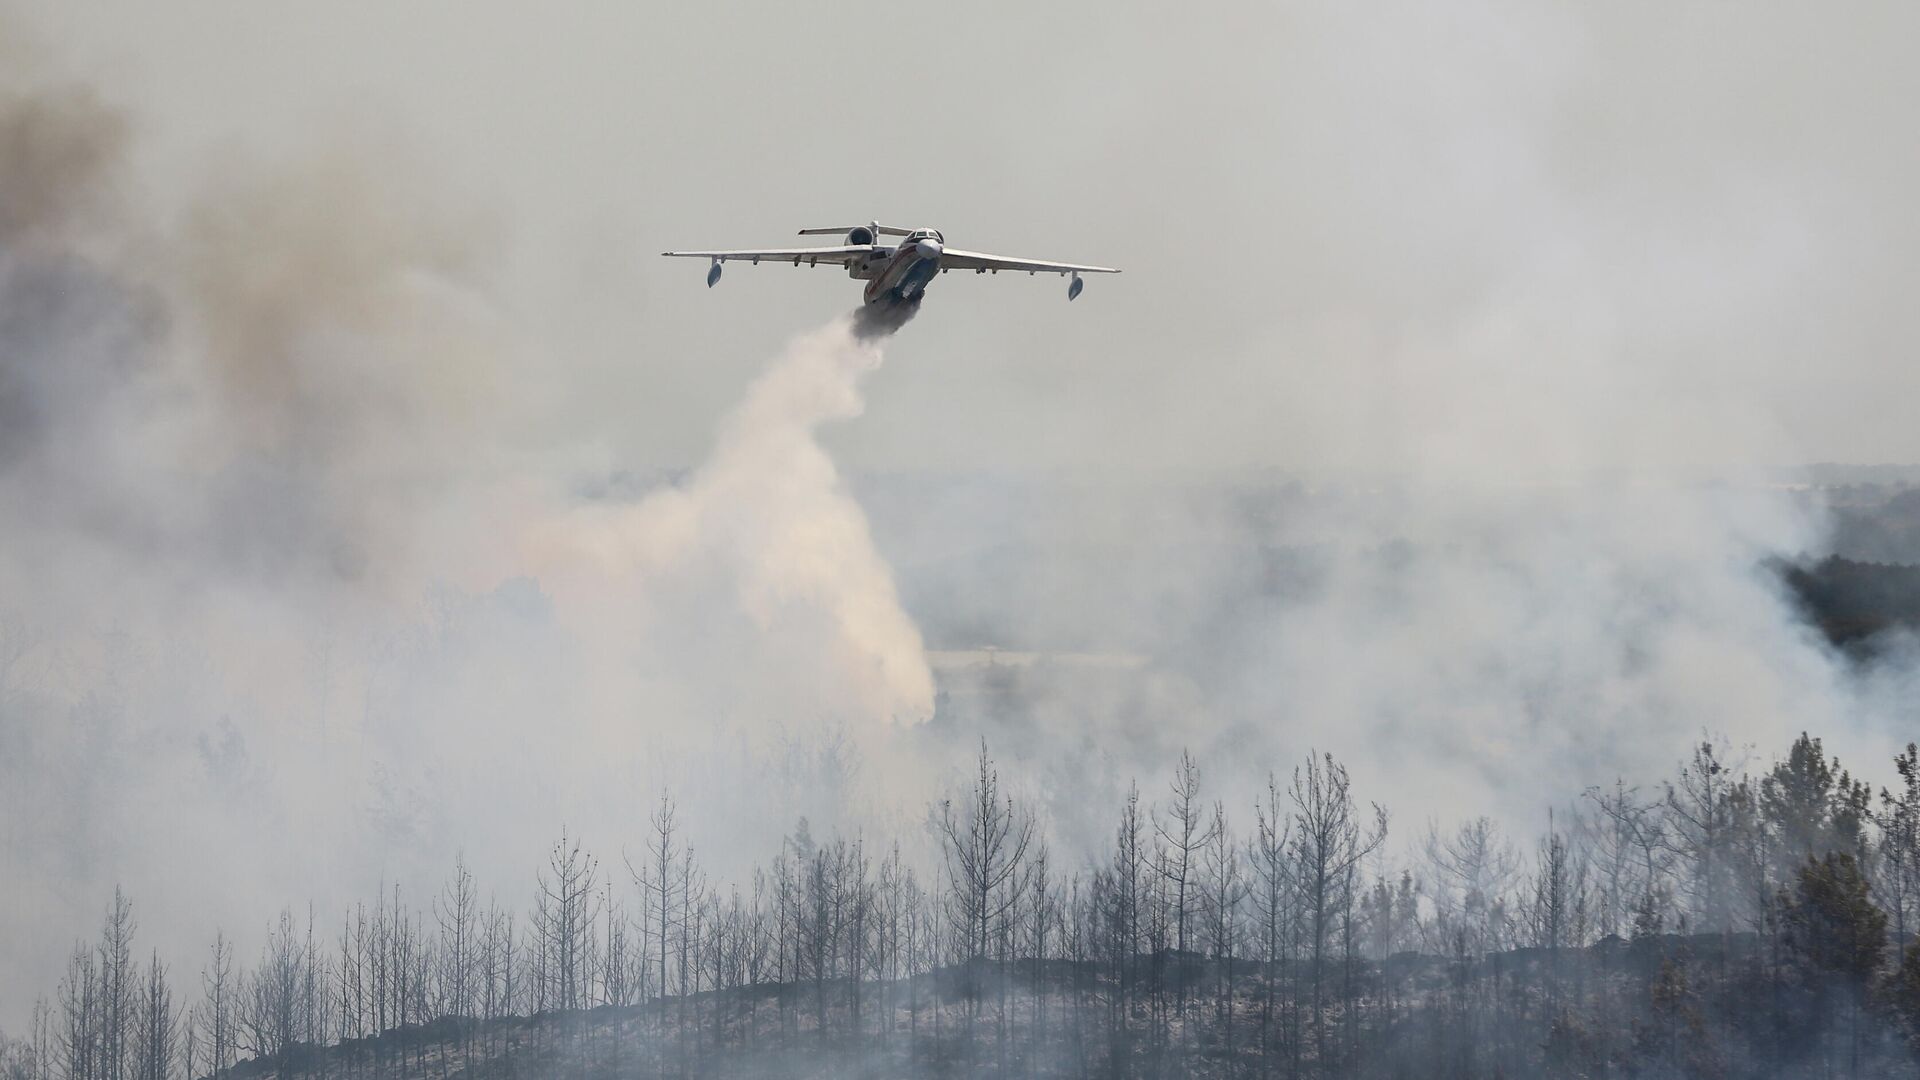 Un avión de bomberos arroja agua sobre un incendio forestal cerca de la ciudad de Manavgat, al este de la ciudad turística de Antalya, Turquía, el 31 de julio de 2021 - Sputnik Mundo, 1920, 01.08.2021